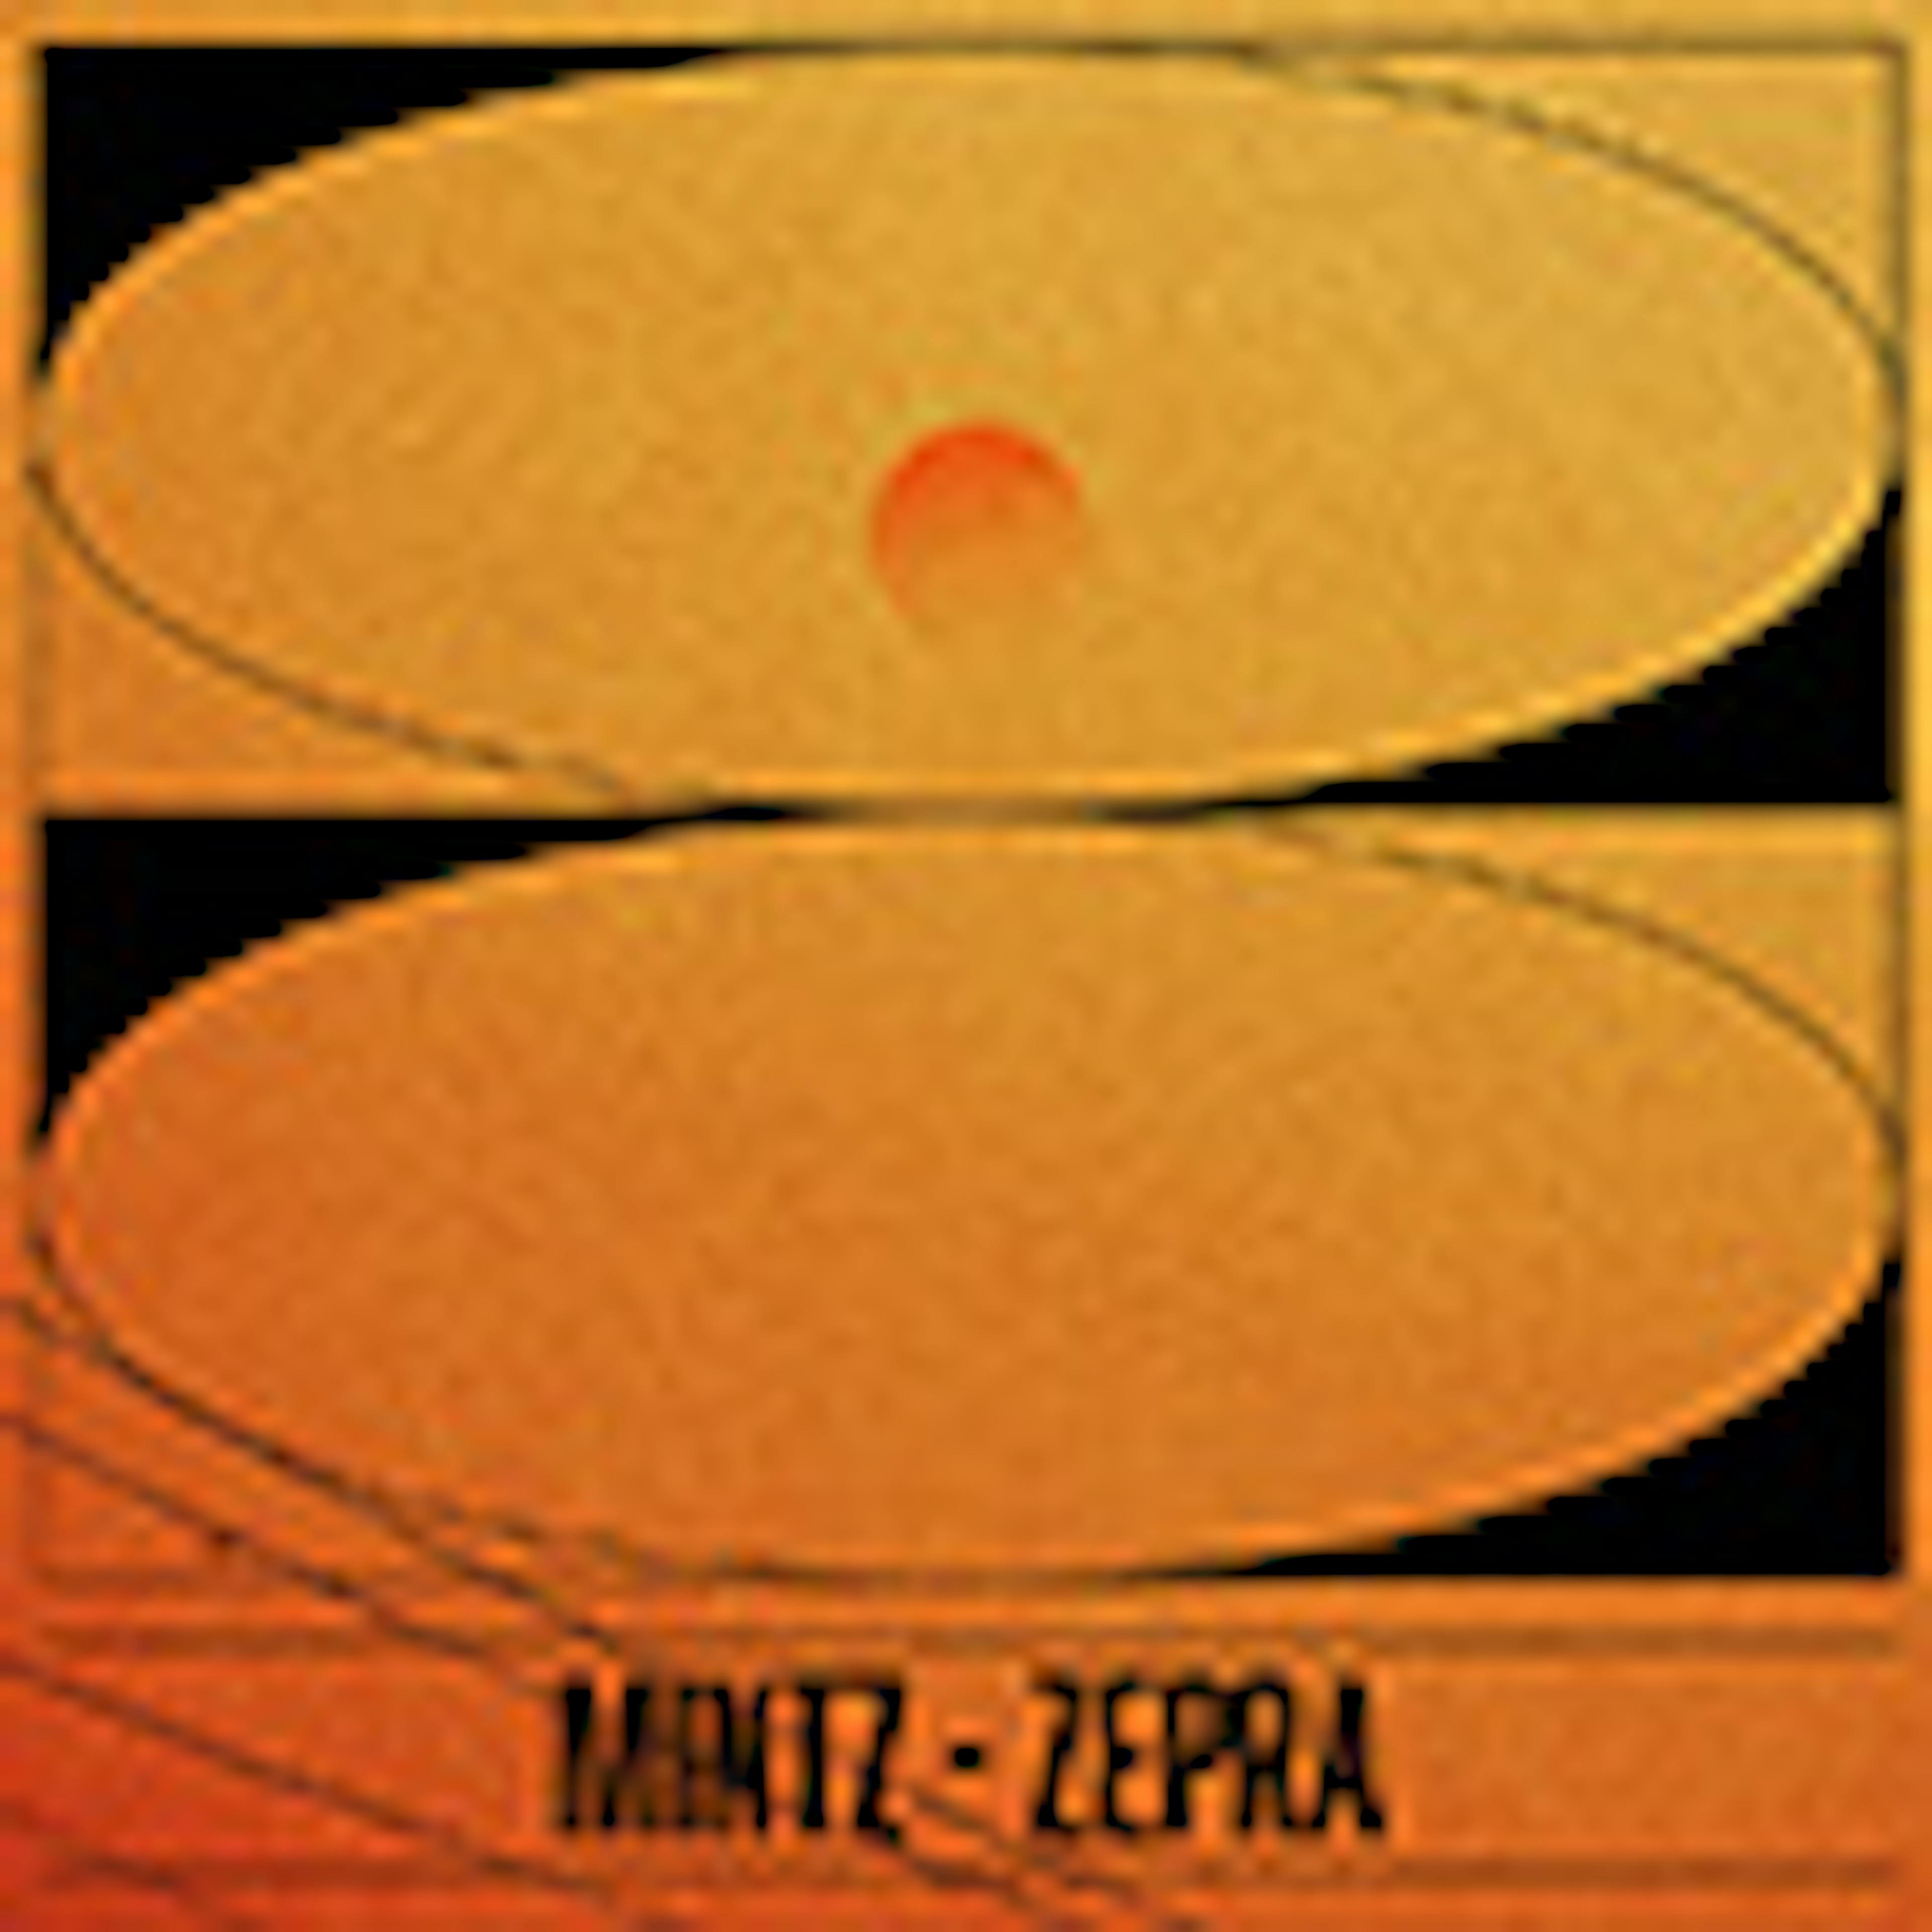 Zepra album cover